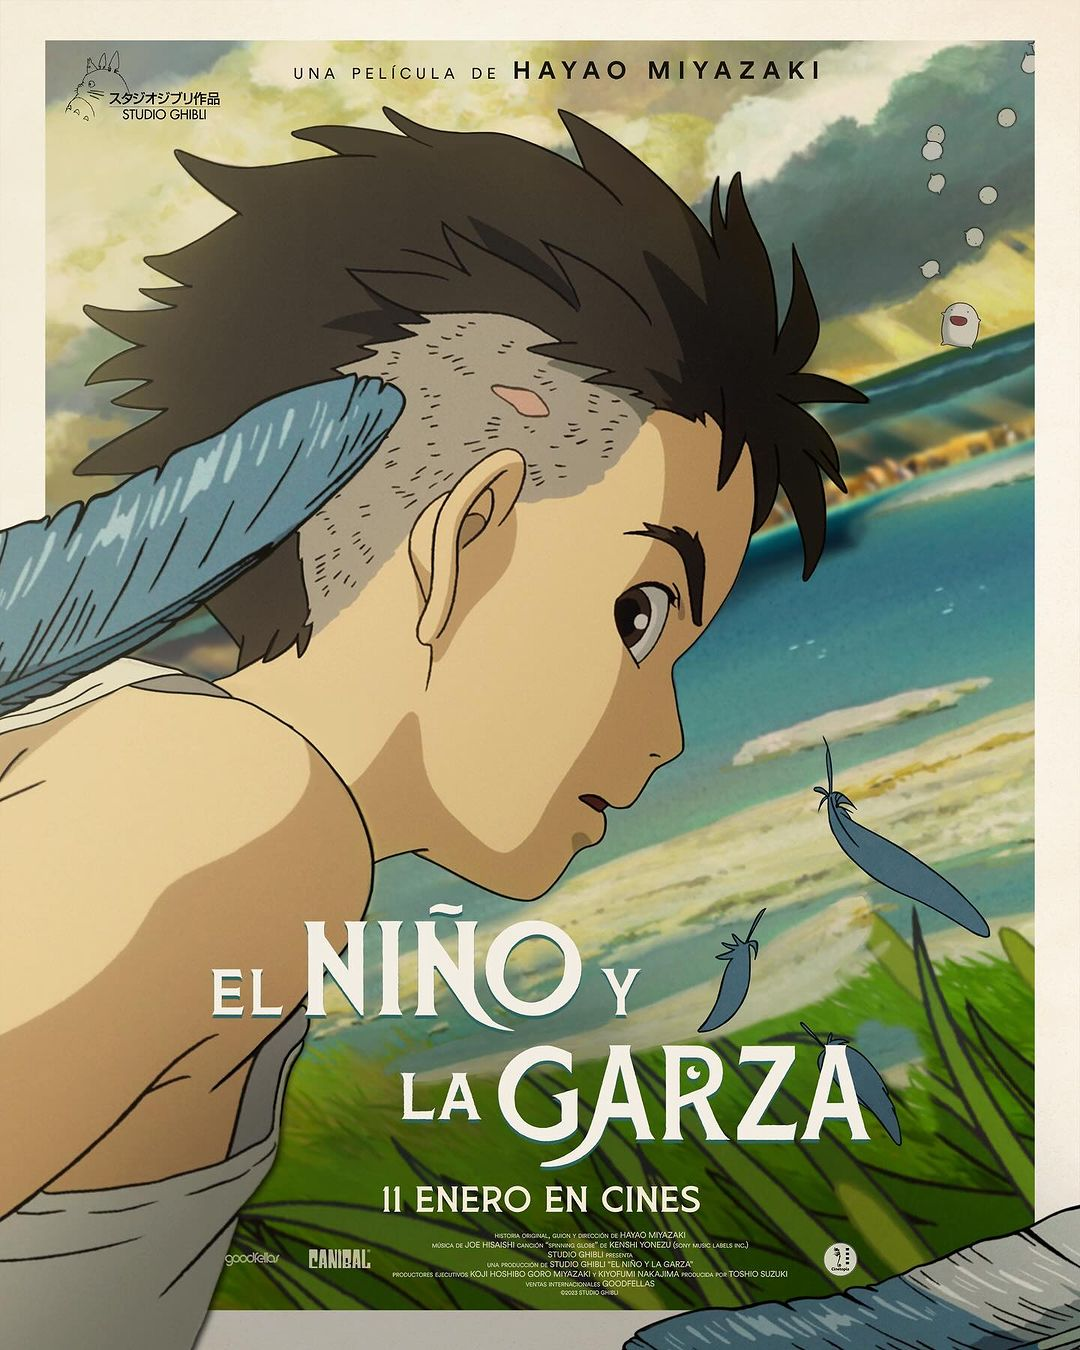 Invitan al público en general a disfrutar del nuevo estreno “El niño y la Garza”, del famoso estudio japonés “Studio Ghibli”